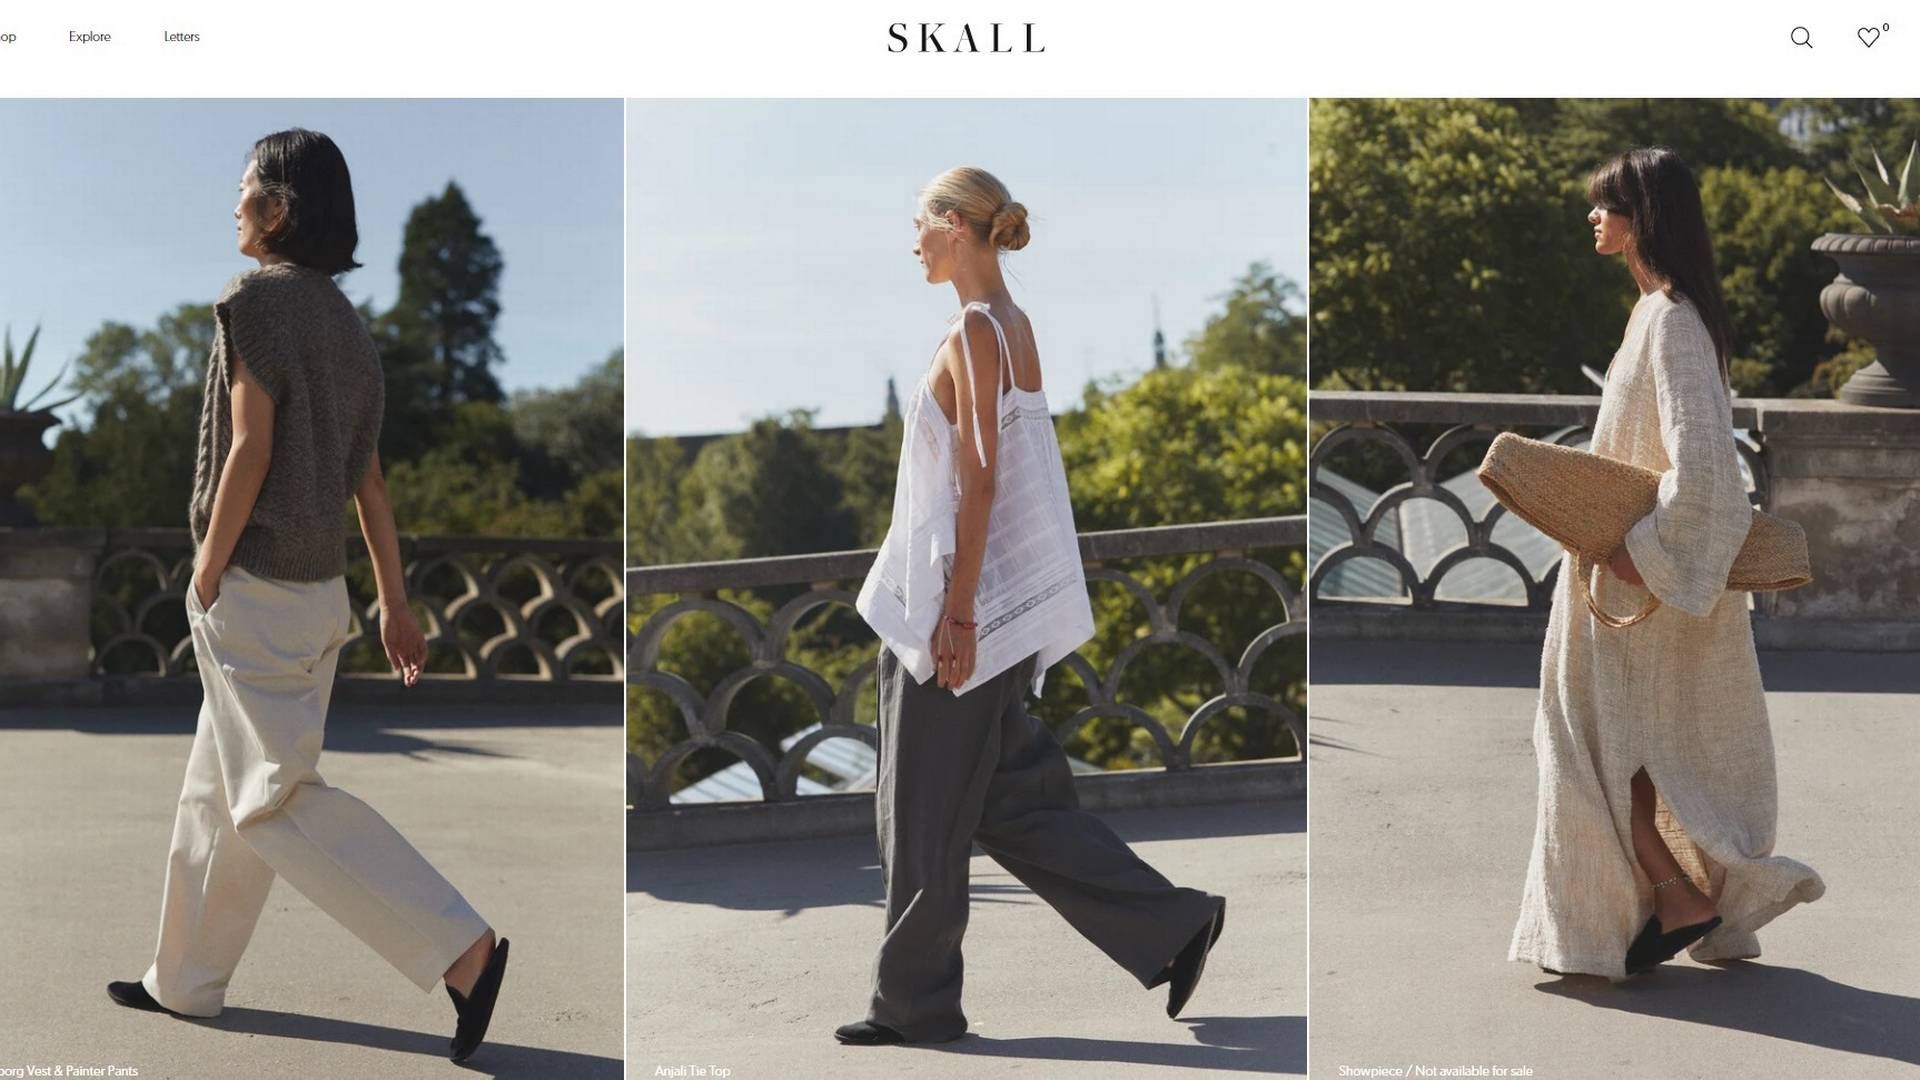 Søstrene Julie og Marie Skall er indehavere af tøjfirmaet Skall Studio, der netop har aflagt et millionoverskud. | Foto: Screenshot / Skall Studio